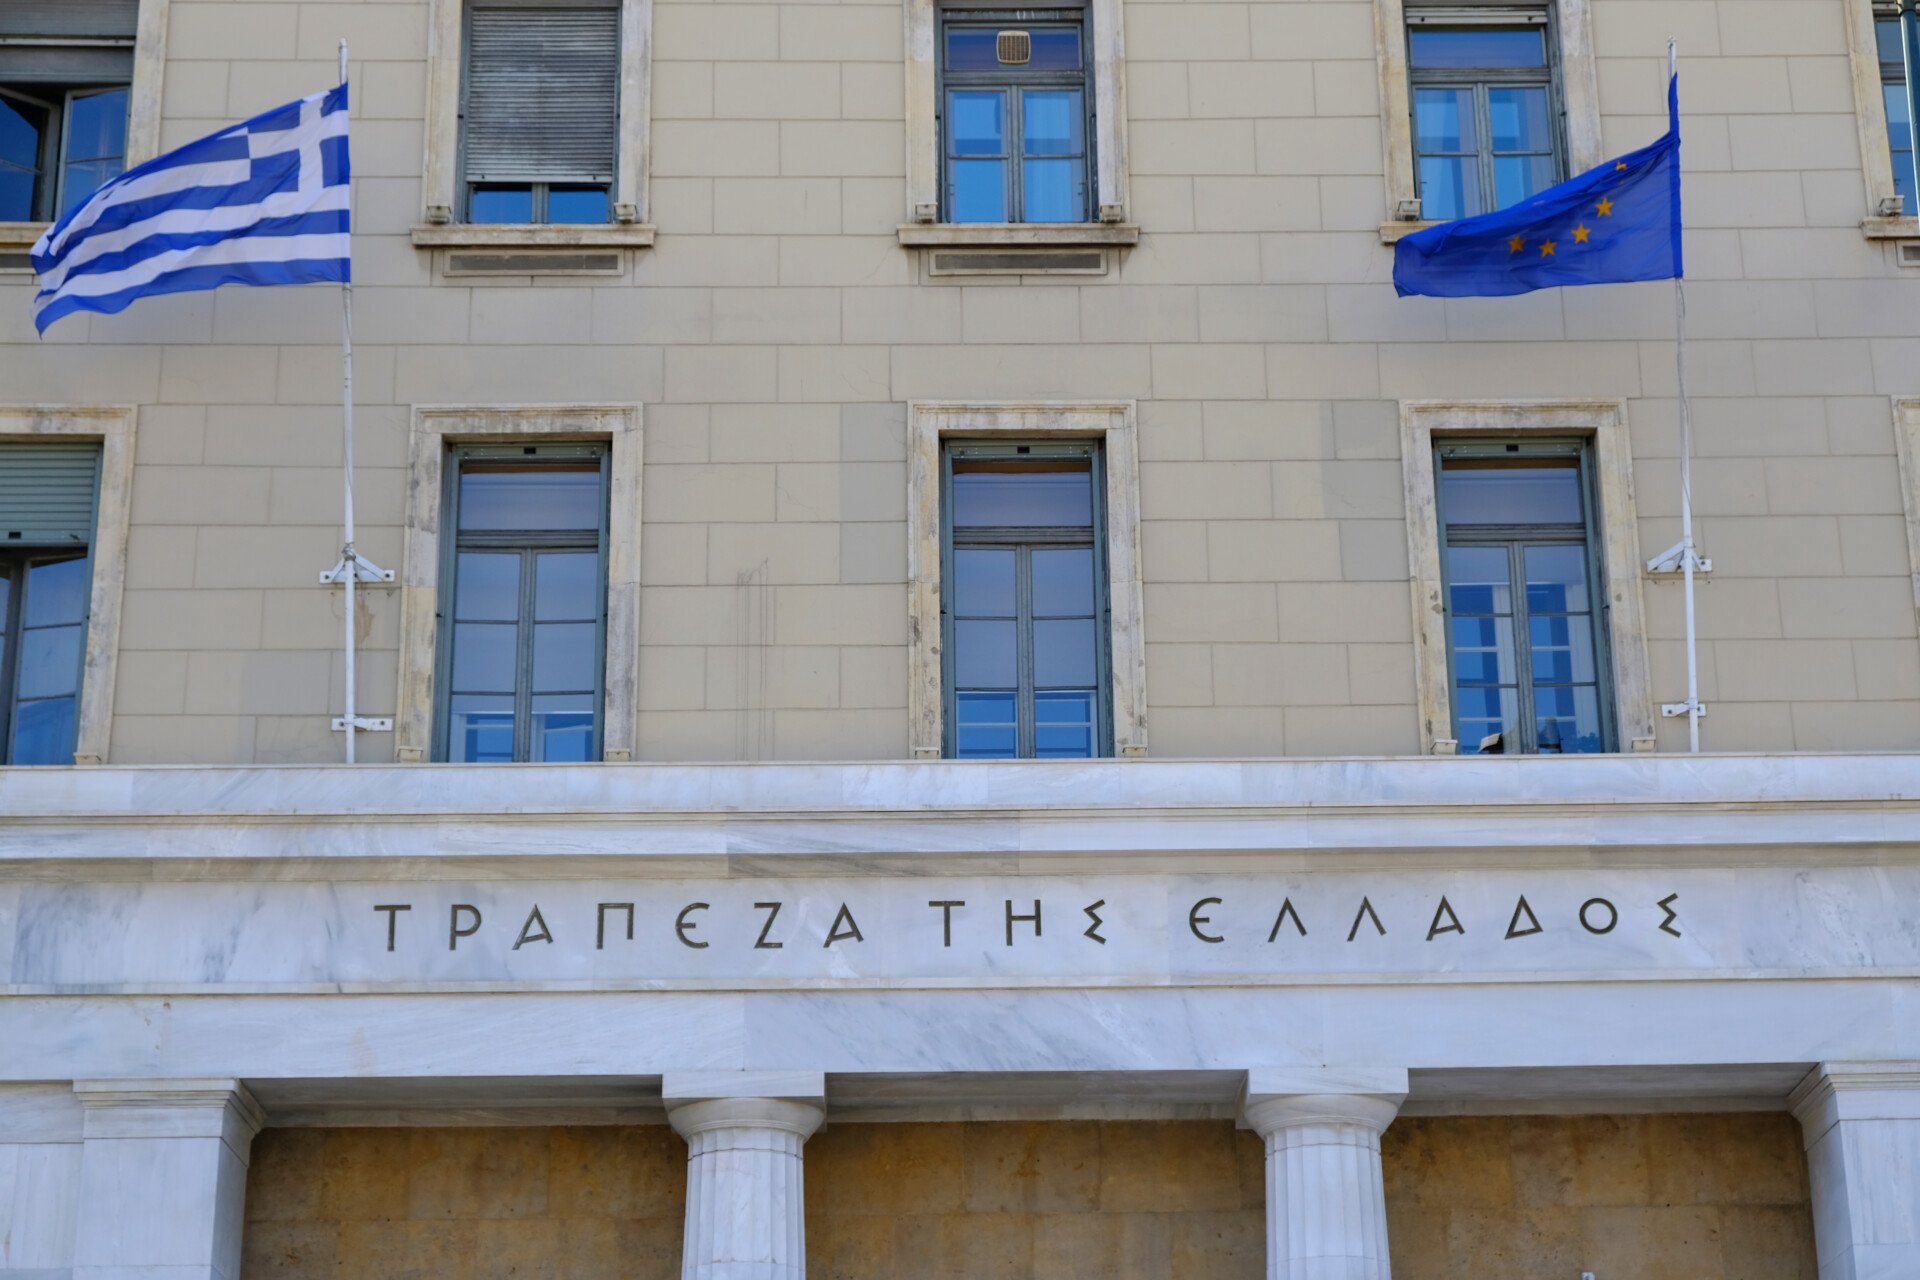 Τράπεζα της Ελλάδος: Πόσο αυξήθηκαν οι καταθέσεις στις ελληνικές τράπεζες